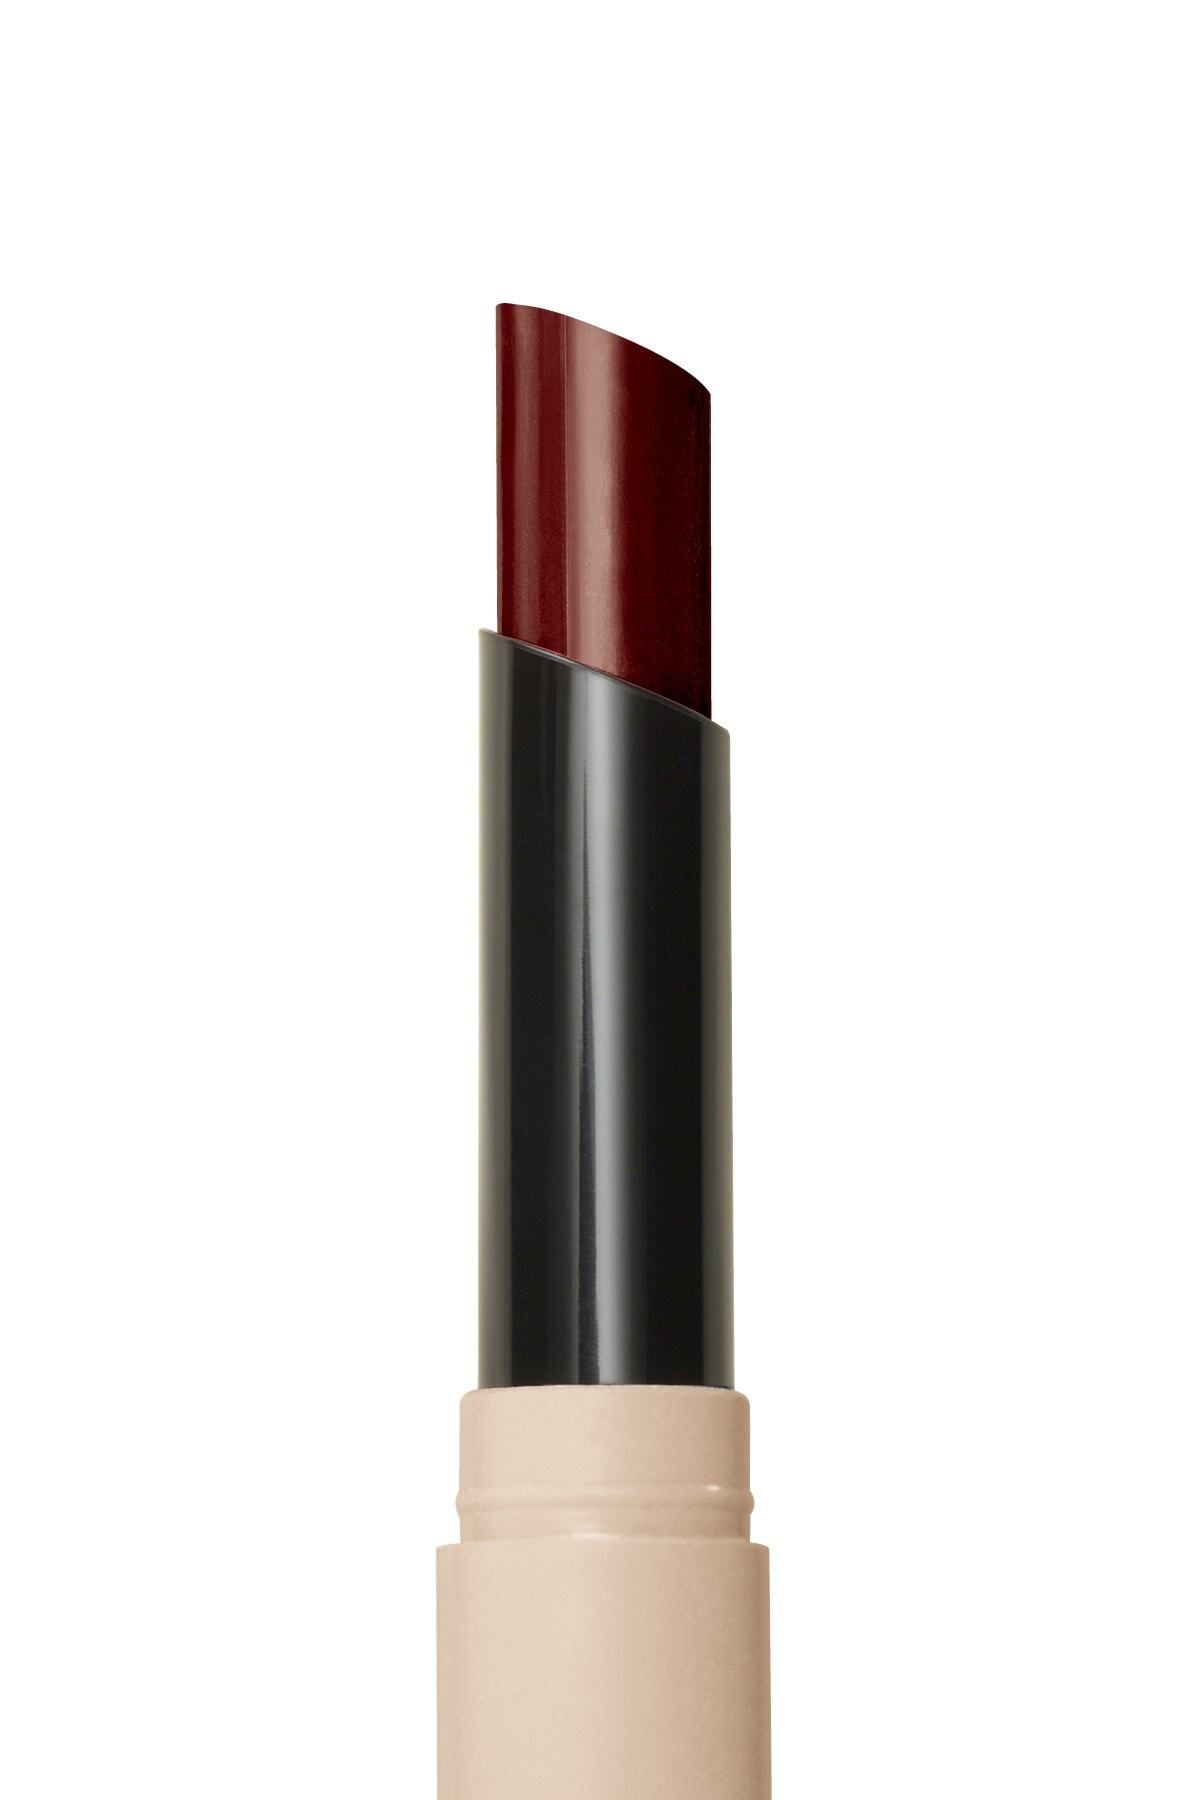 Avon - Tinted Lip Balm Renkli Dudak Balmı Plum